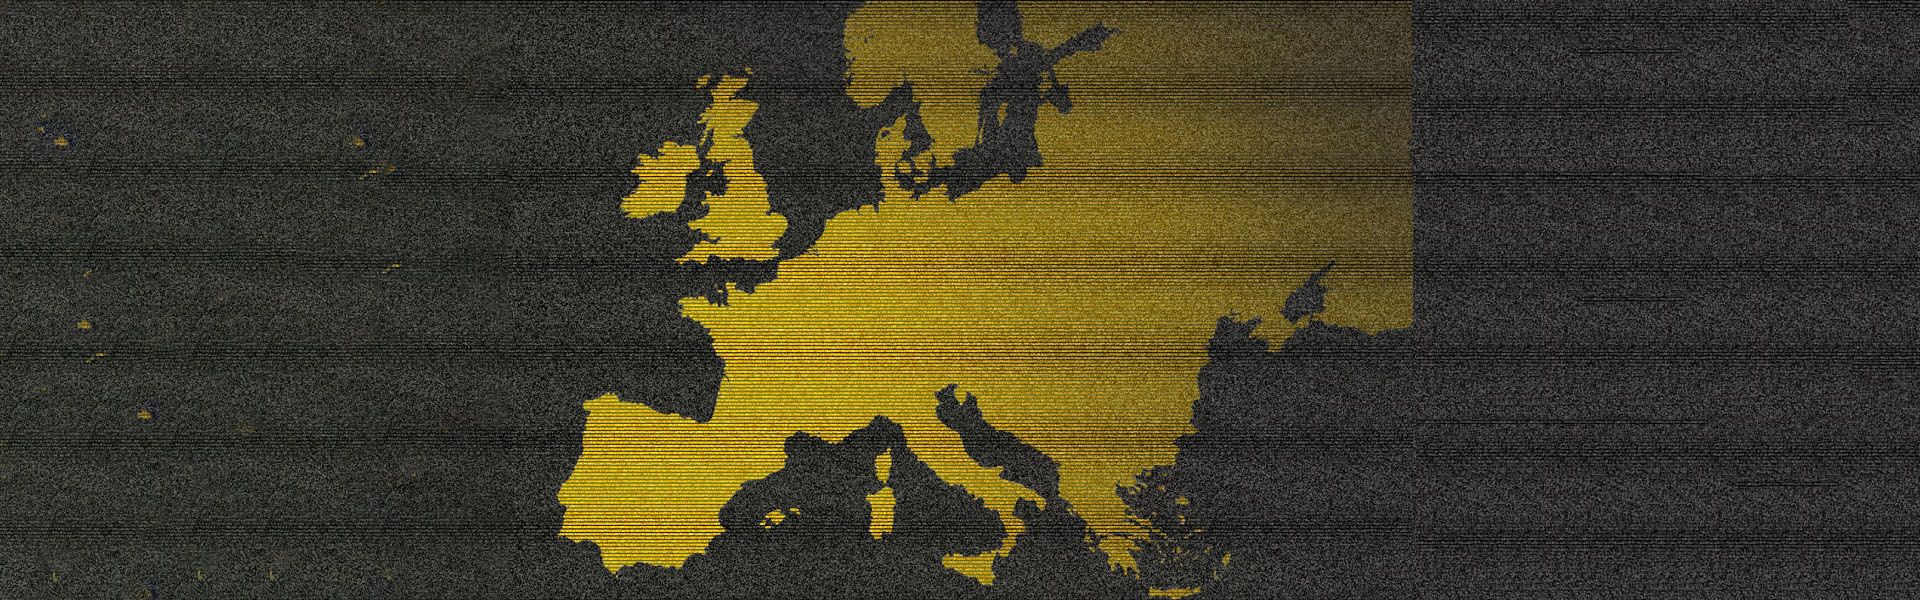 Біткоїн-заходи в Європі: погляд на ком'юніті